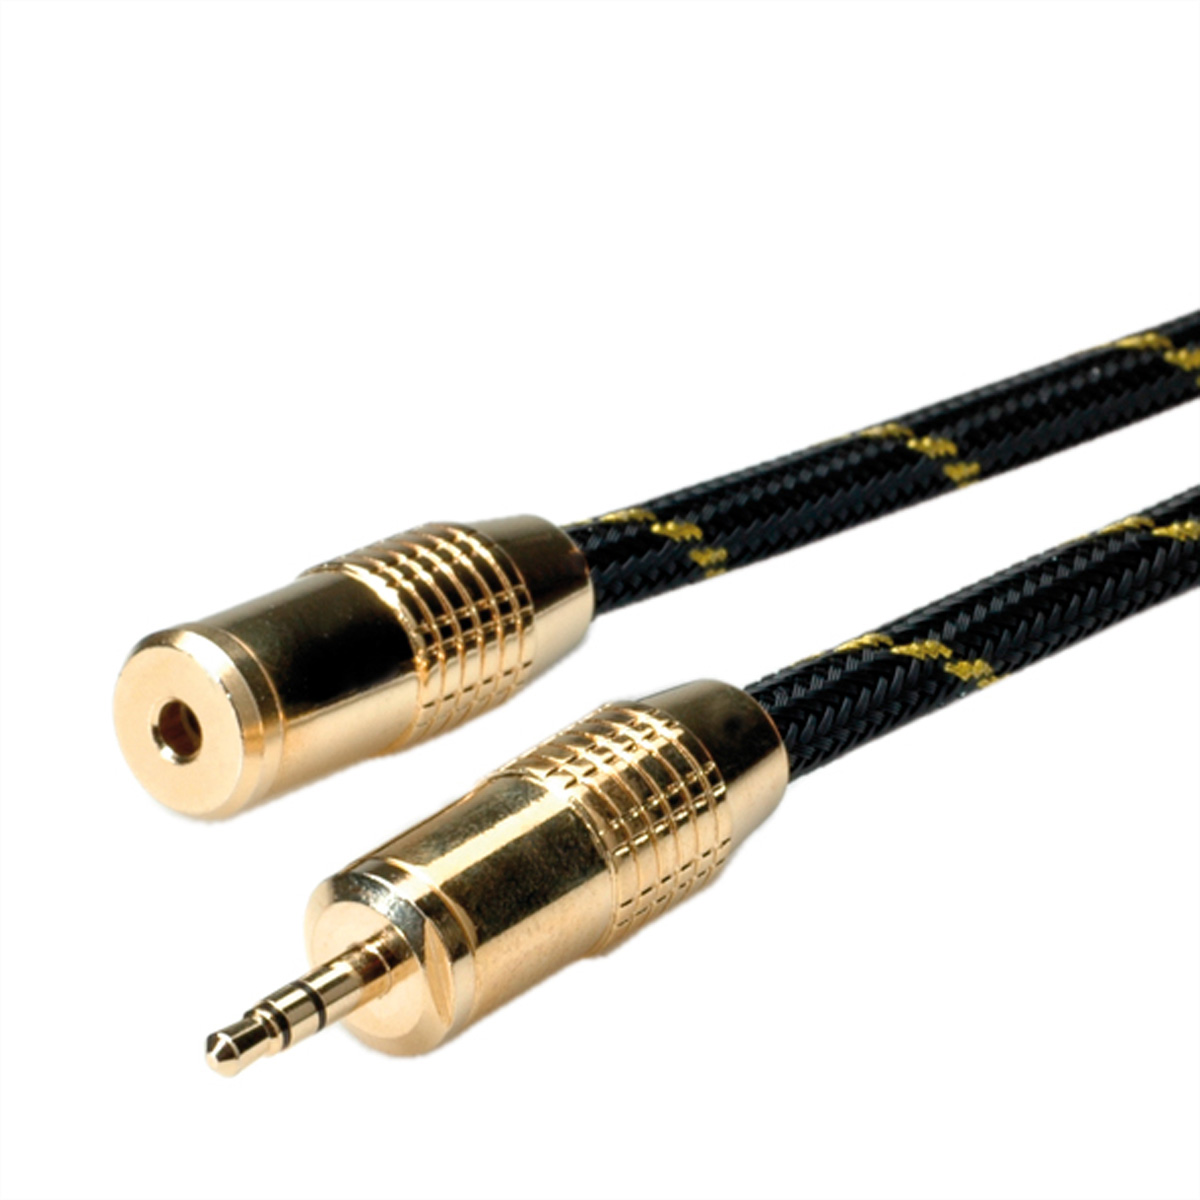 Audio-Verlängerungskabel, ROLINE 3,5mm Audio-Verlängerungskabel 3,5mm ST/BU, 2,5 GOLD m